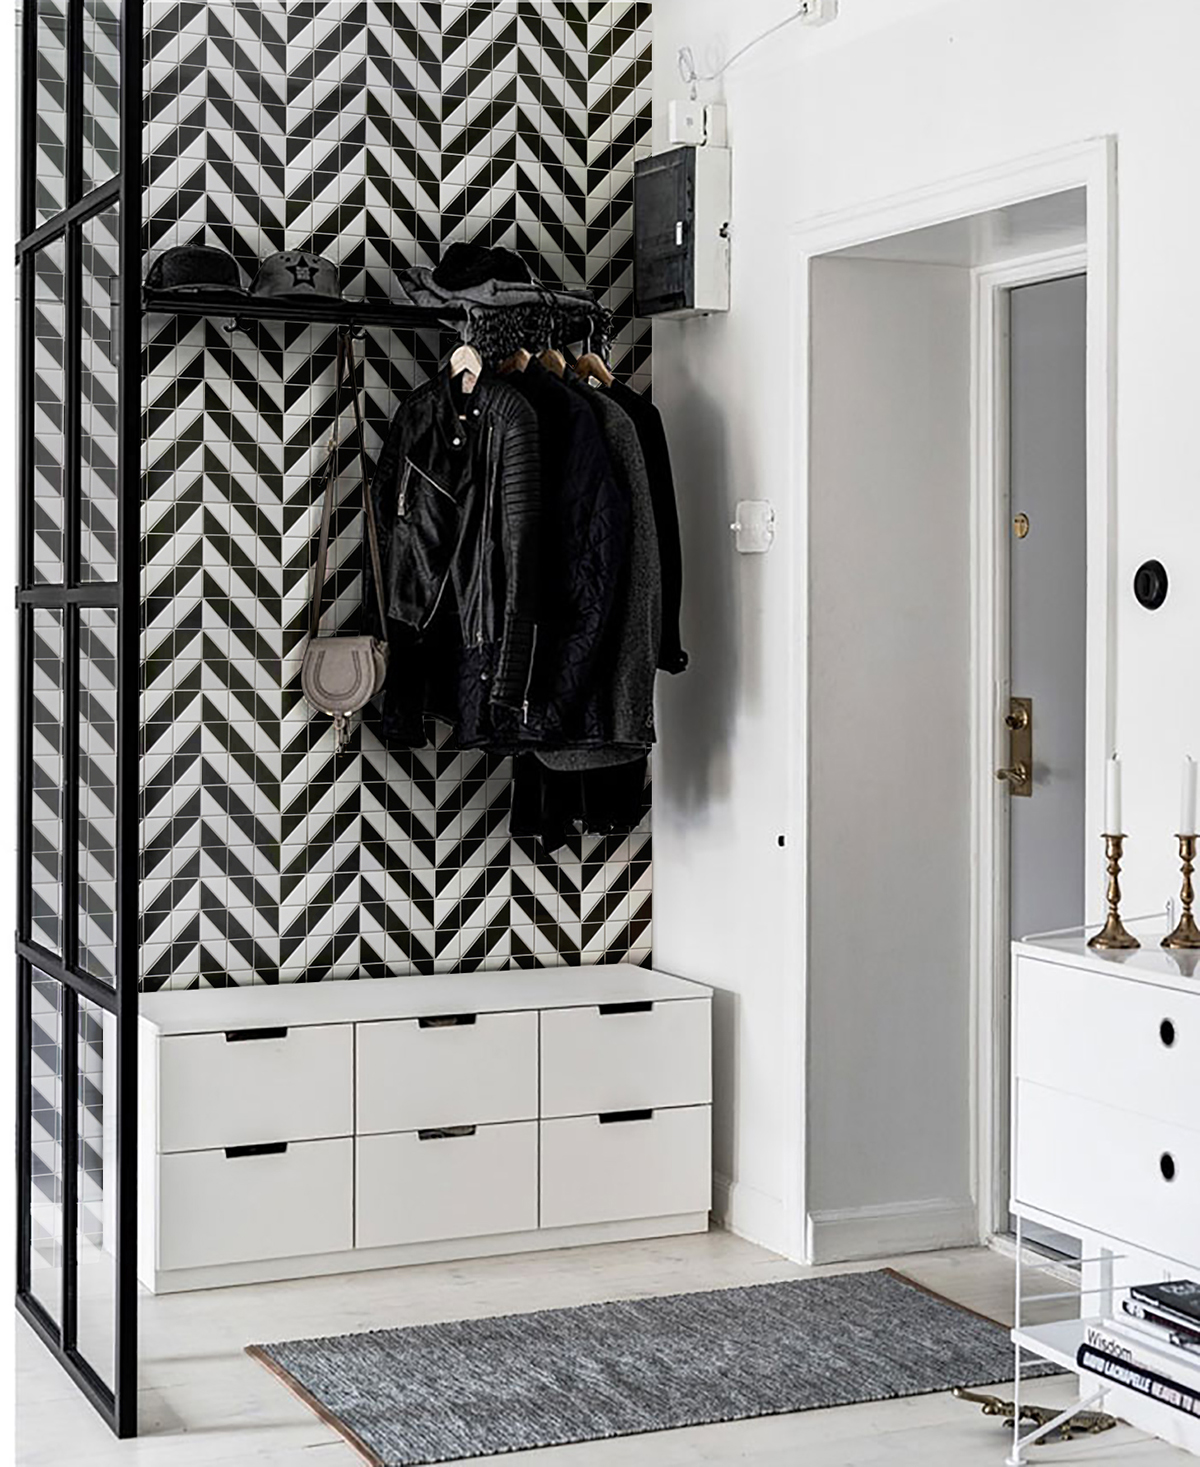 2'' black white porcelain artistic tile designs for wall decor